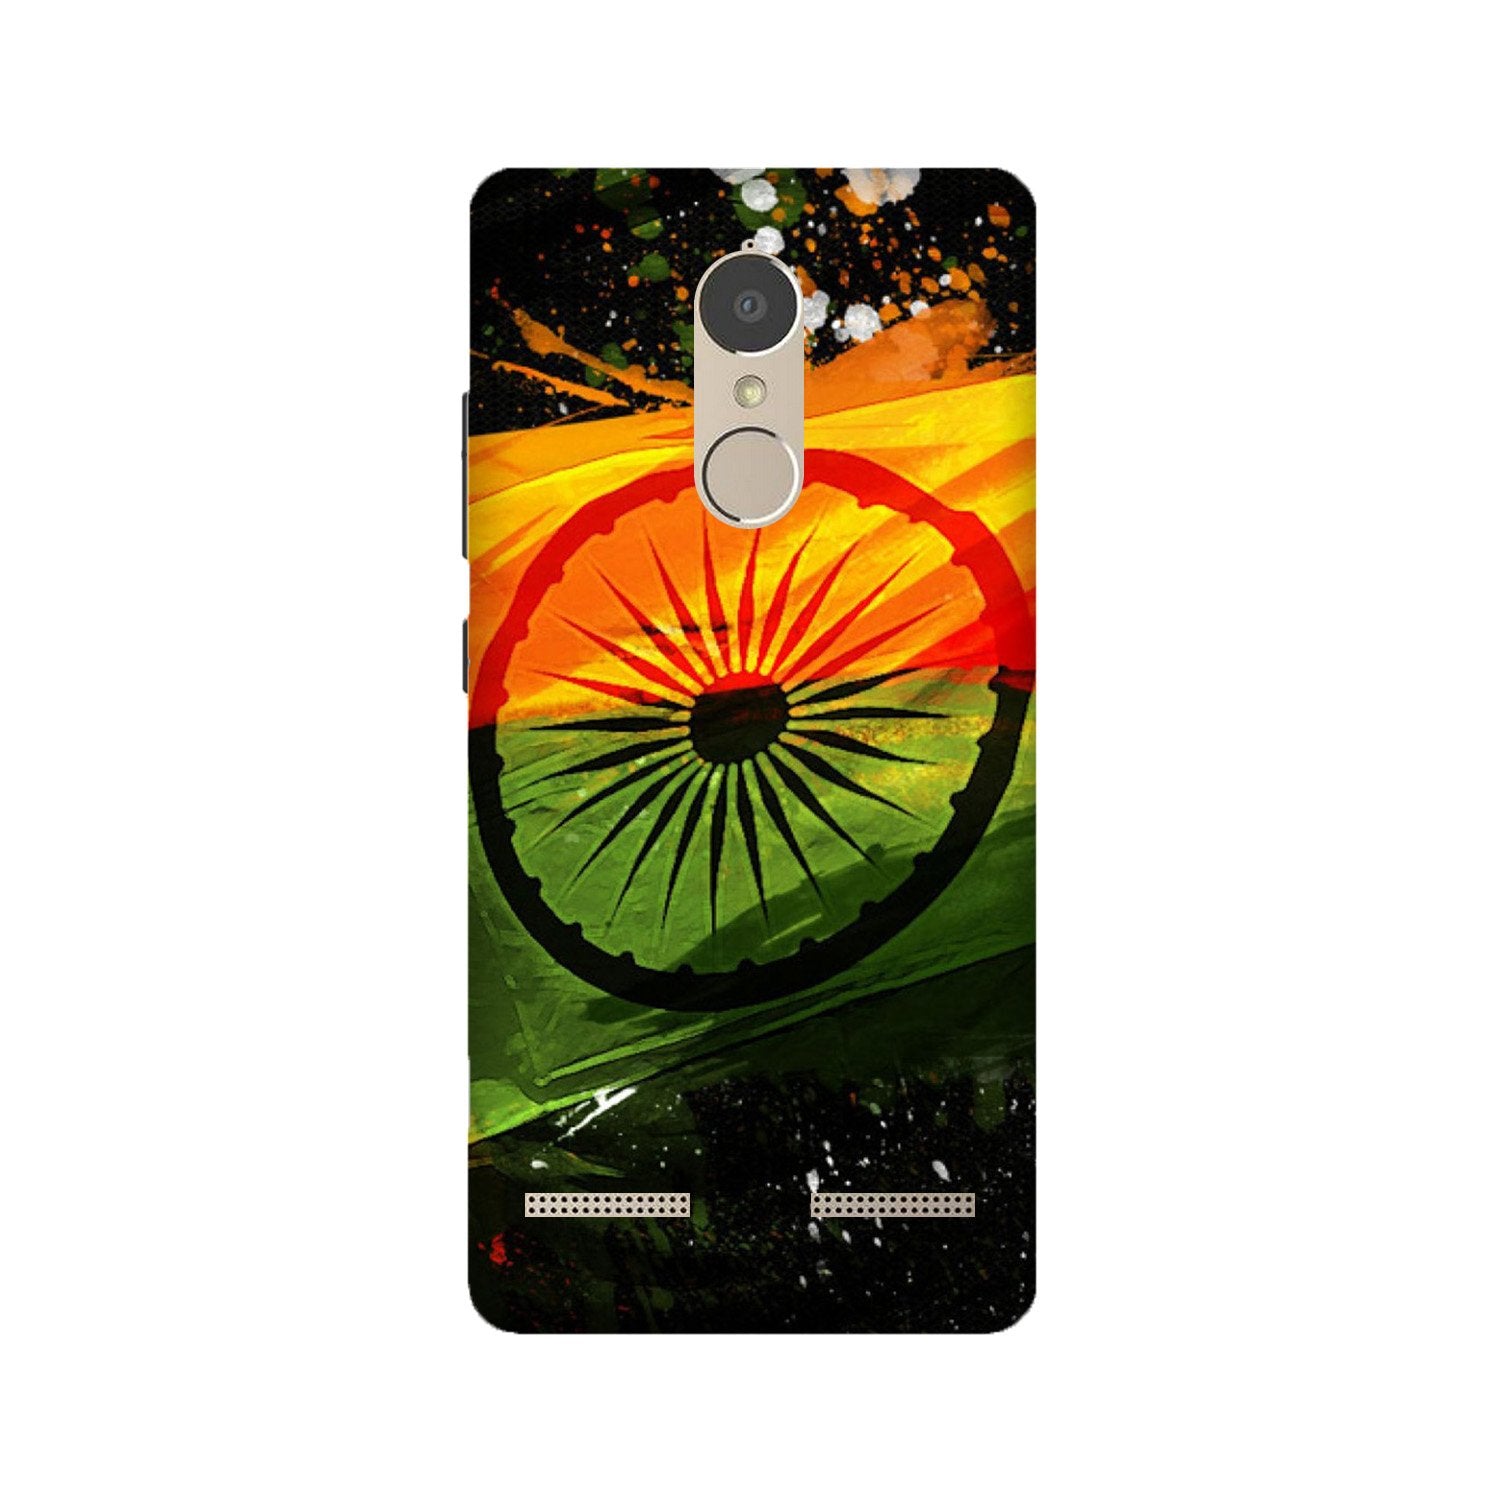 Indian Flag Case for Lenovo K6 / K6 Power  (Design - 137)